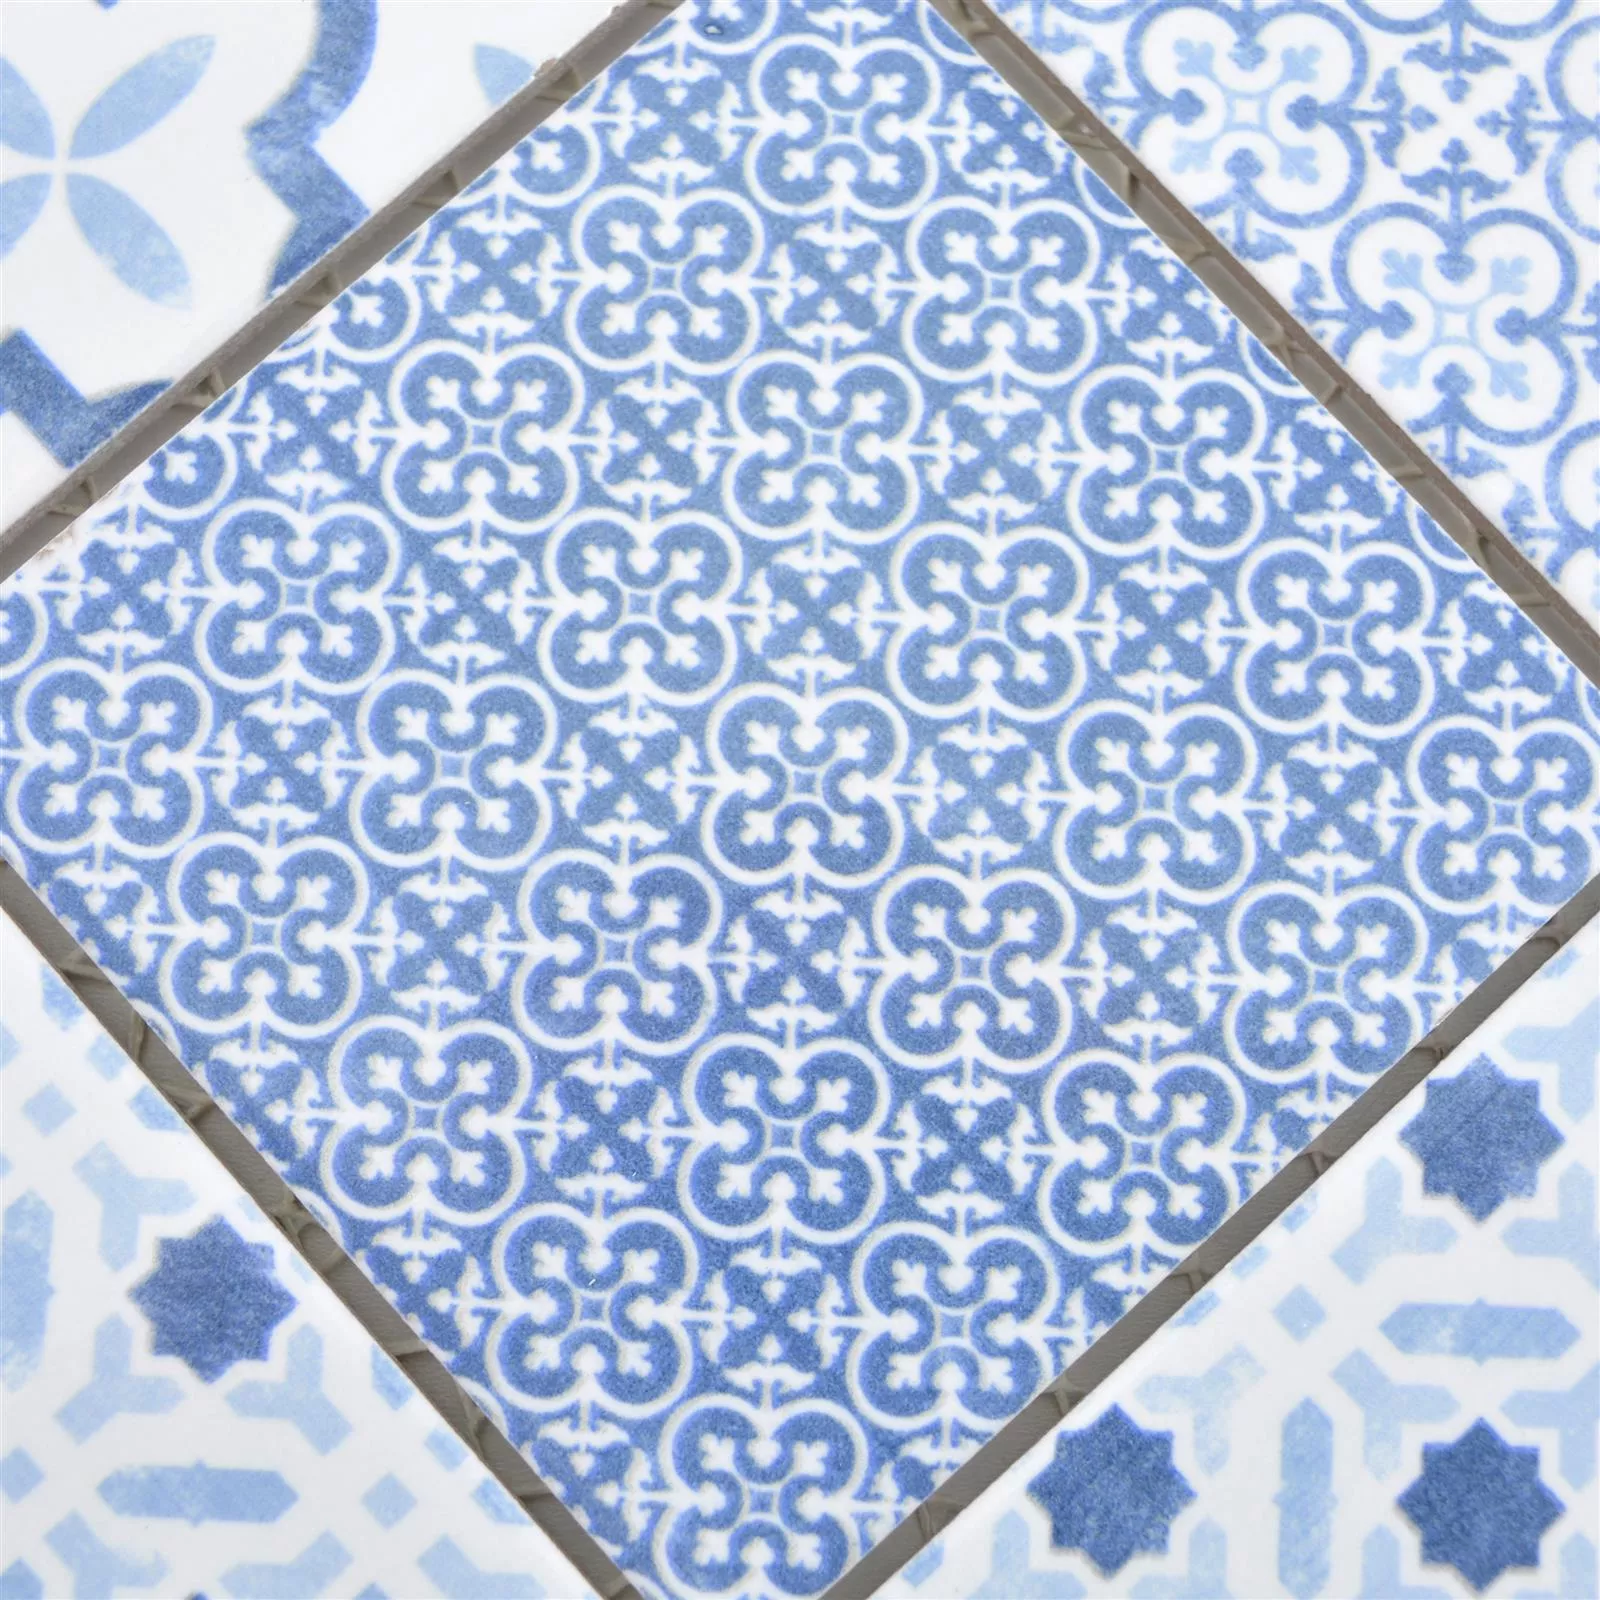 Campione Ceramica Mosaico Romantica Retro Blue